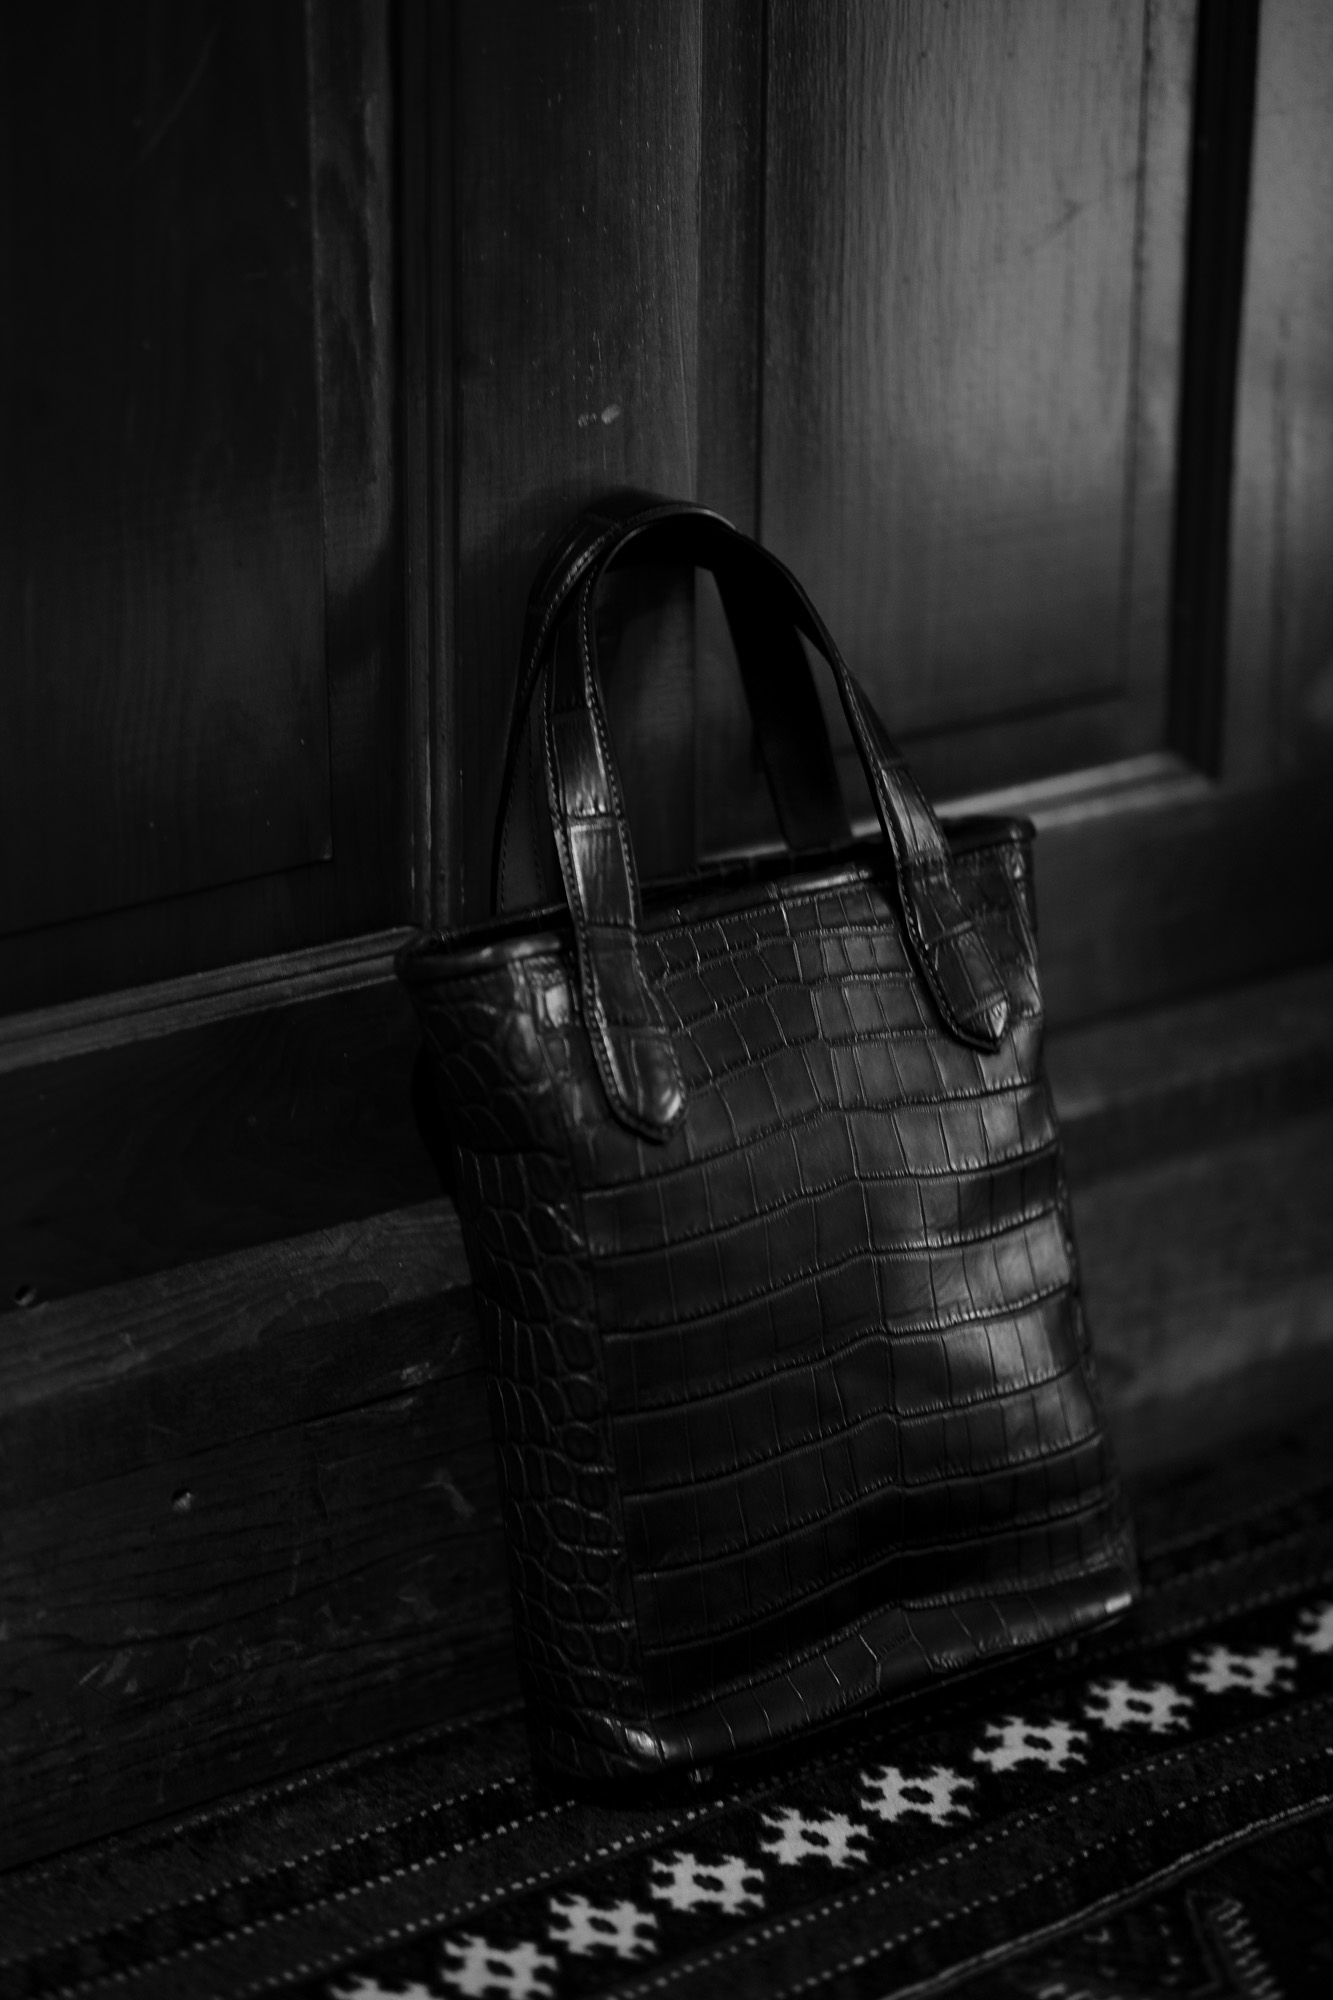 Cisei × 山本製鞄 (シセイ × 山本製鞄) Crocodile Tote Bag Small (クロコダイル トートバッグ スモール) Nile Crocodile Leather (ワニ革) ナイル クロコダイル トート バッグ BLACK(ブラック),NAVY(ネイビー),BROWN(ブラウン) Made in Japan (日本製) cisei yamamotoseiho トートバック クロコ 愛知 名古屋